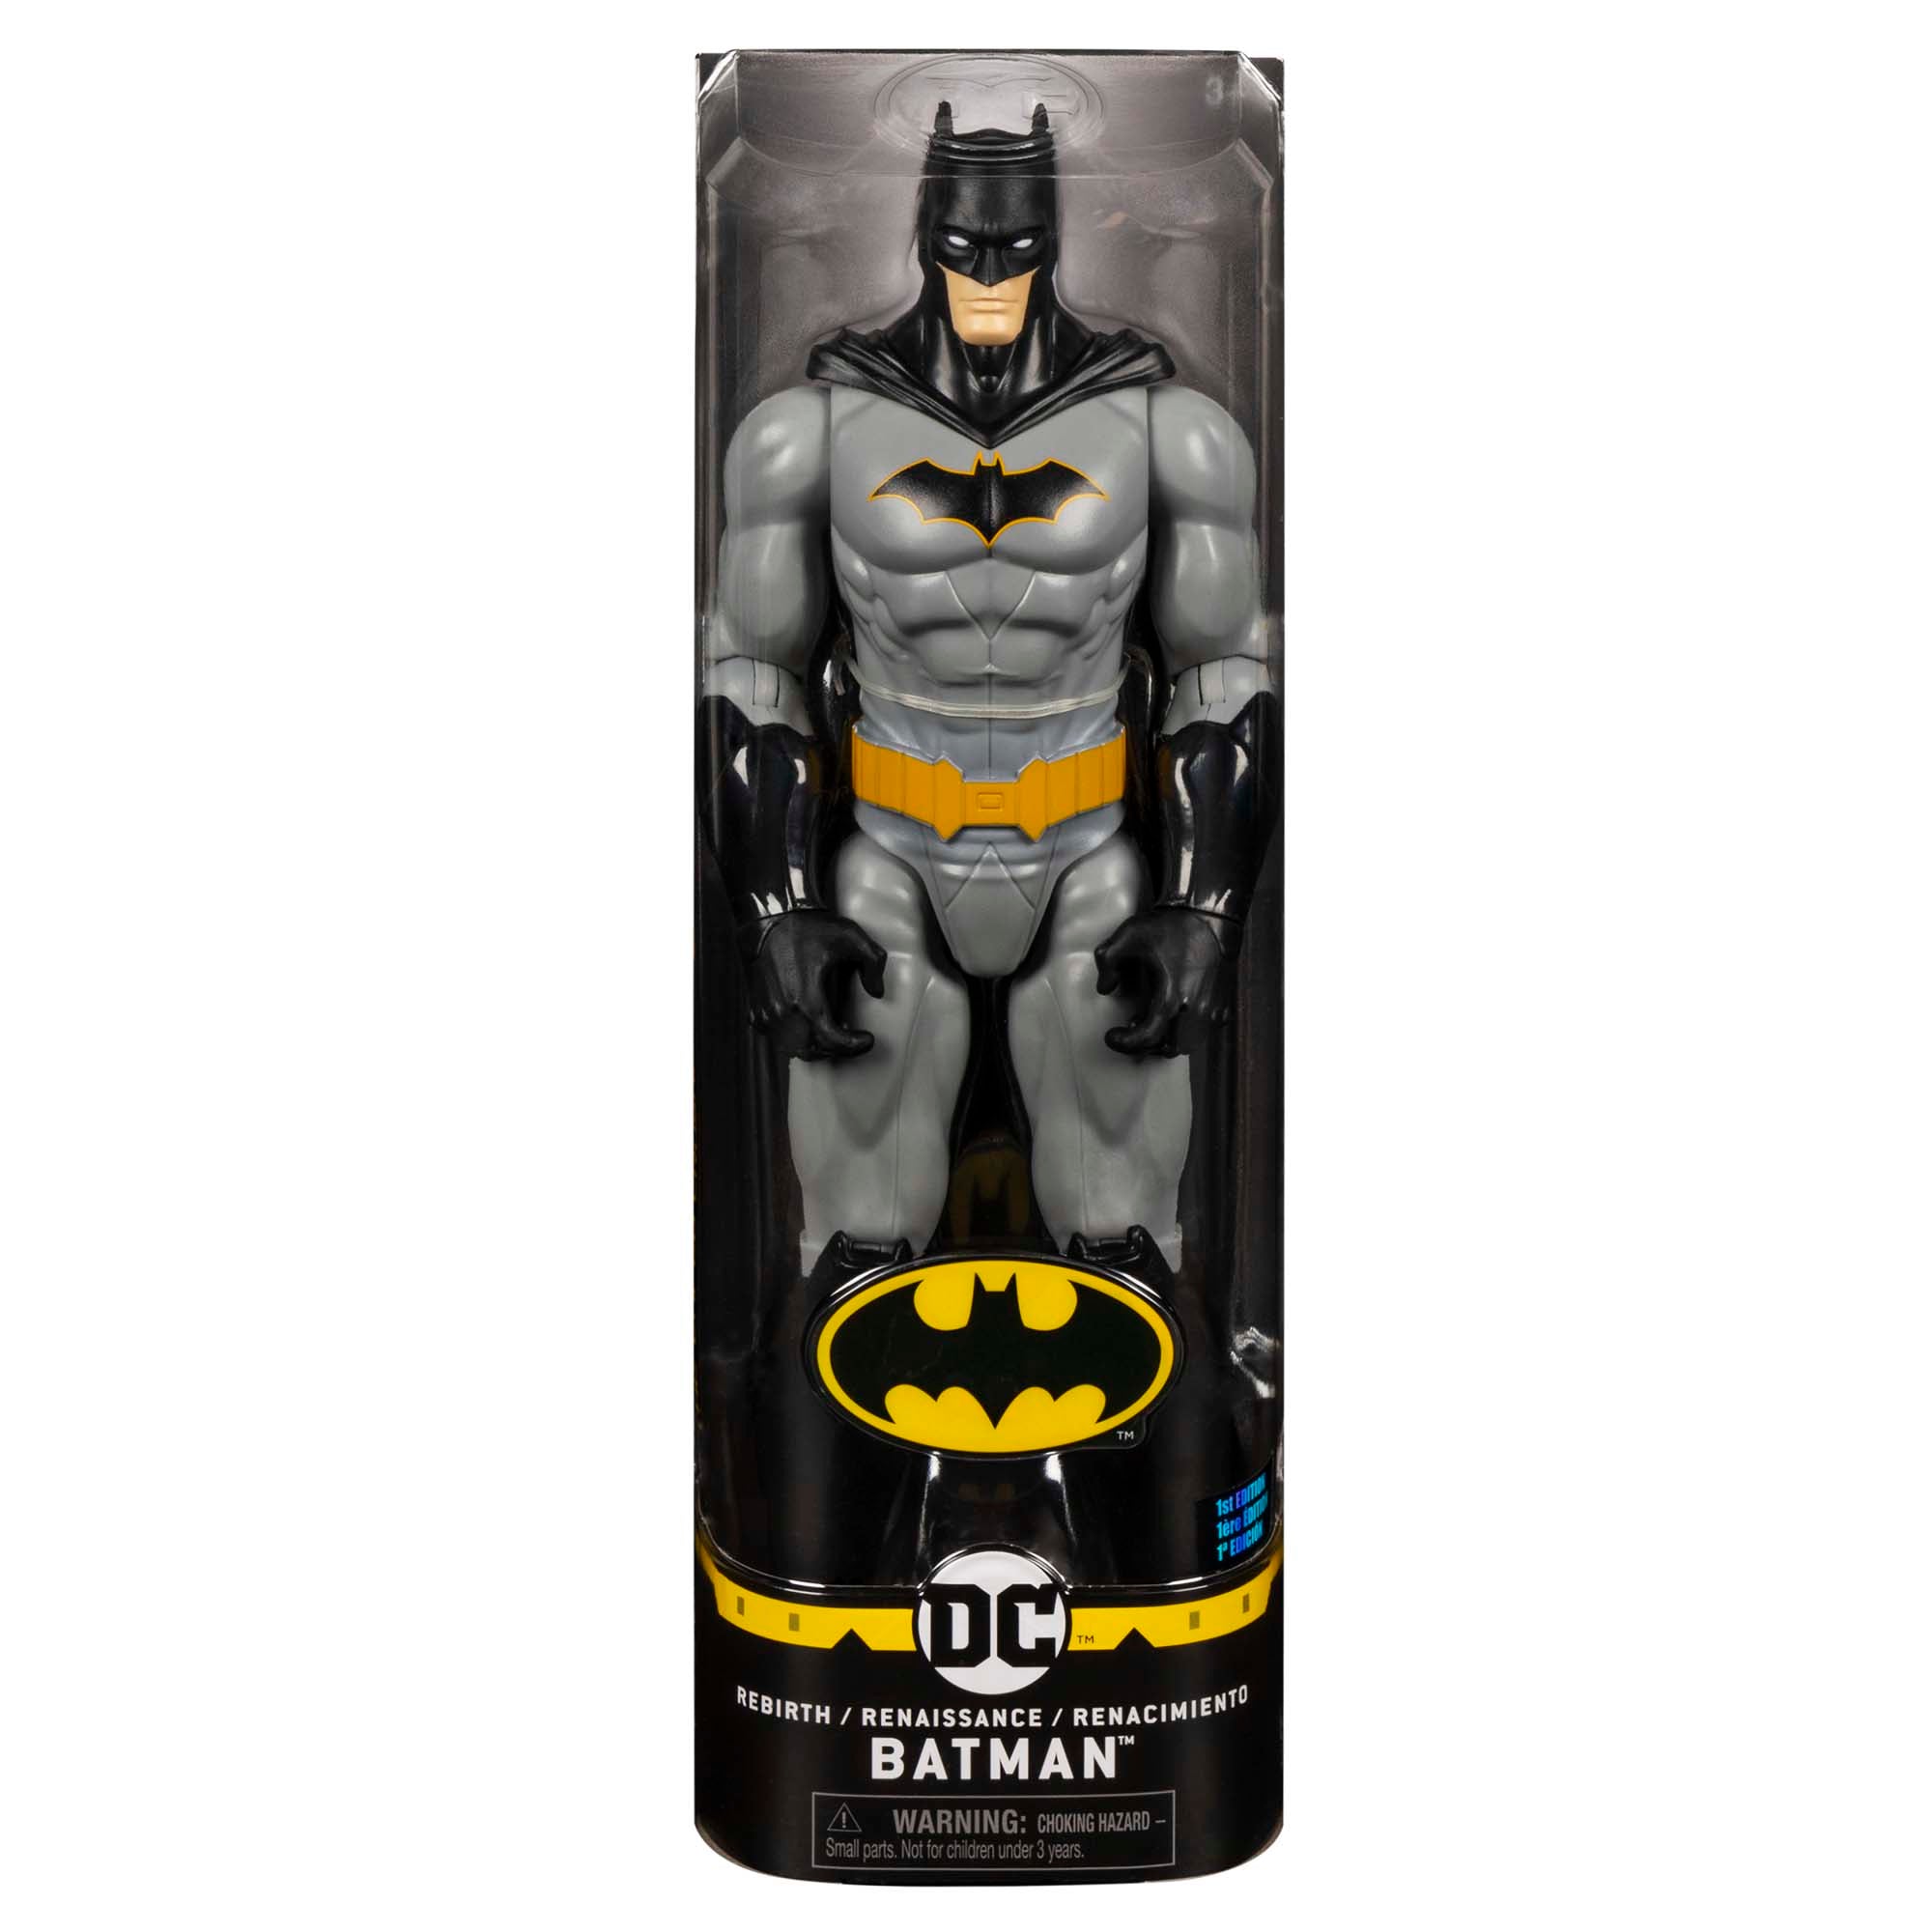 Figurine des Personnages de Batman, 30 cm, Assortiment – Party Expert